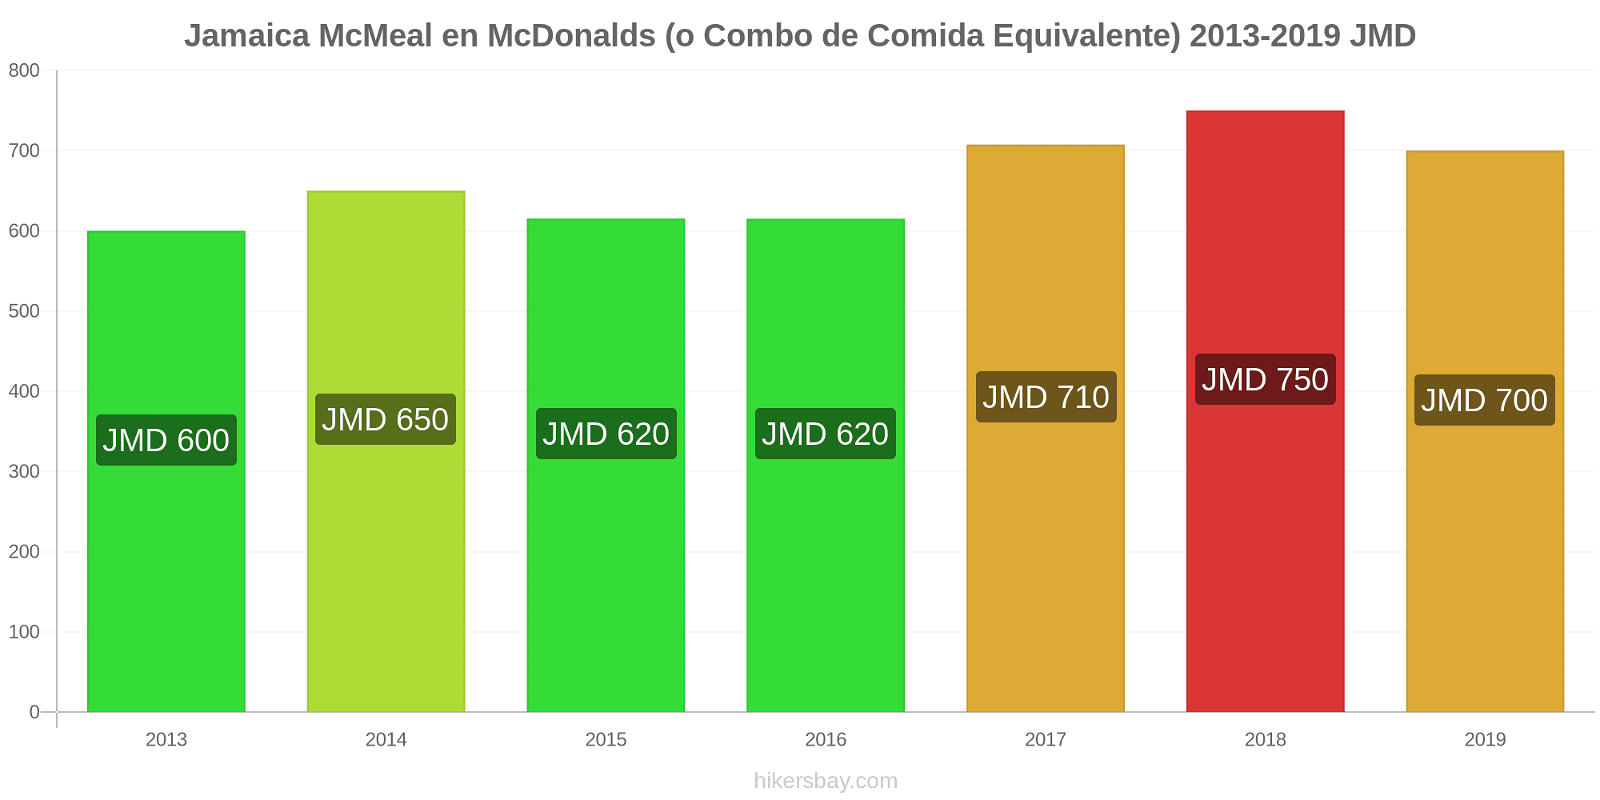 Jamaica cambios de precios McMeal en McDonalds (o menú equivalente) hikersbay.com